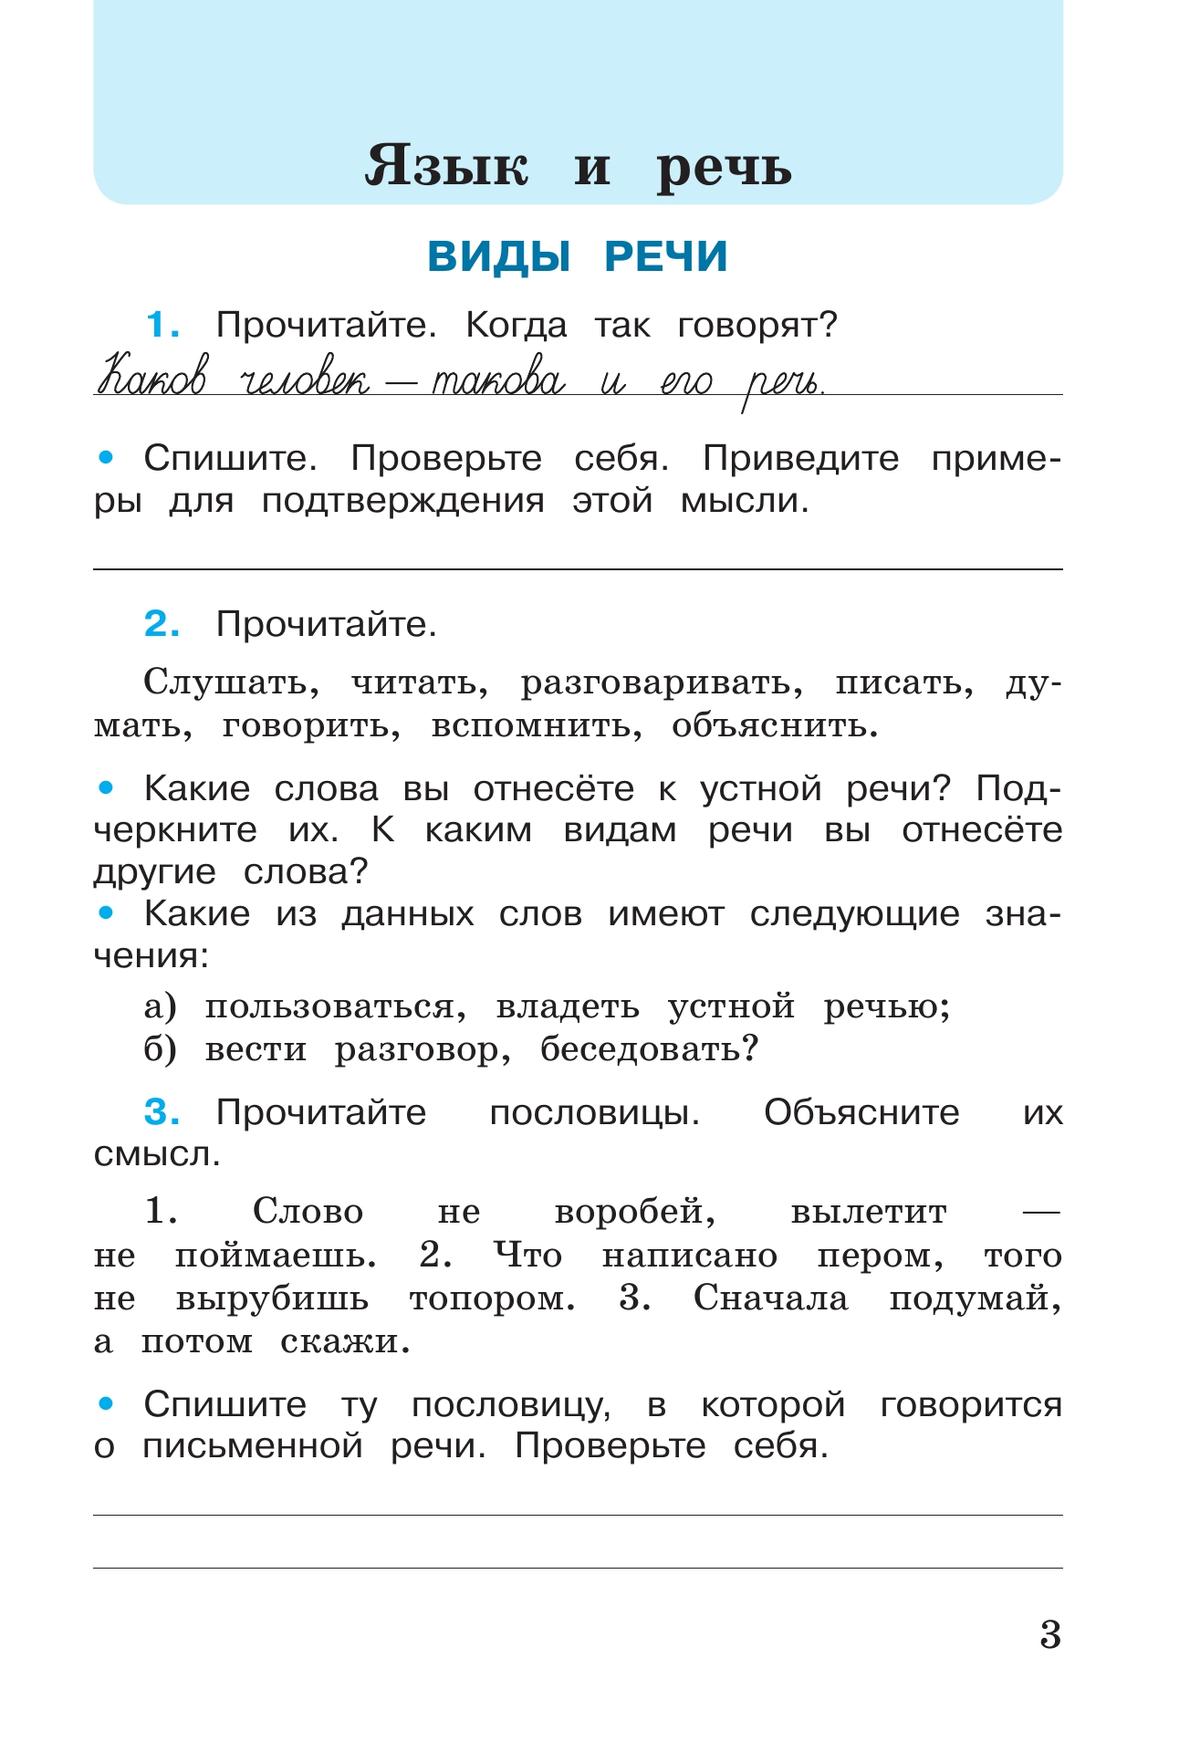 Русский язык. Рабочая тетрадь. 3 класс. В 2-х ч. Ч. 1 8